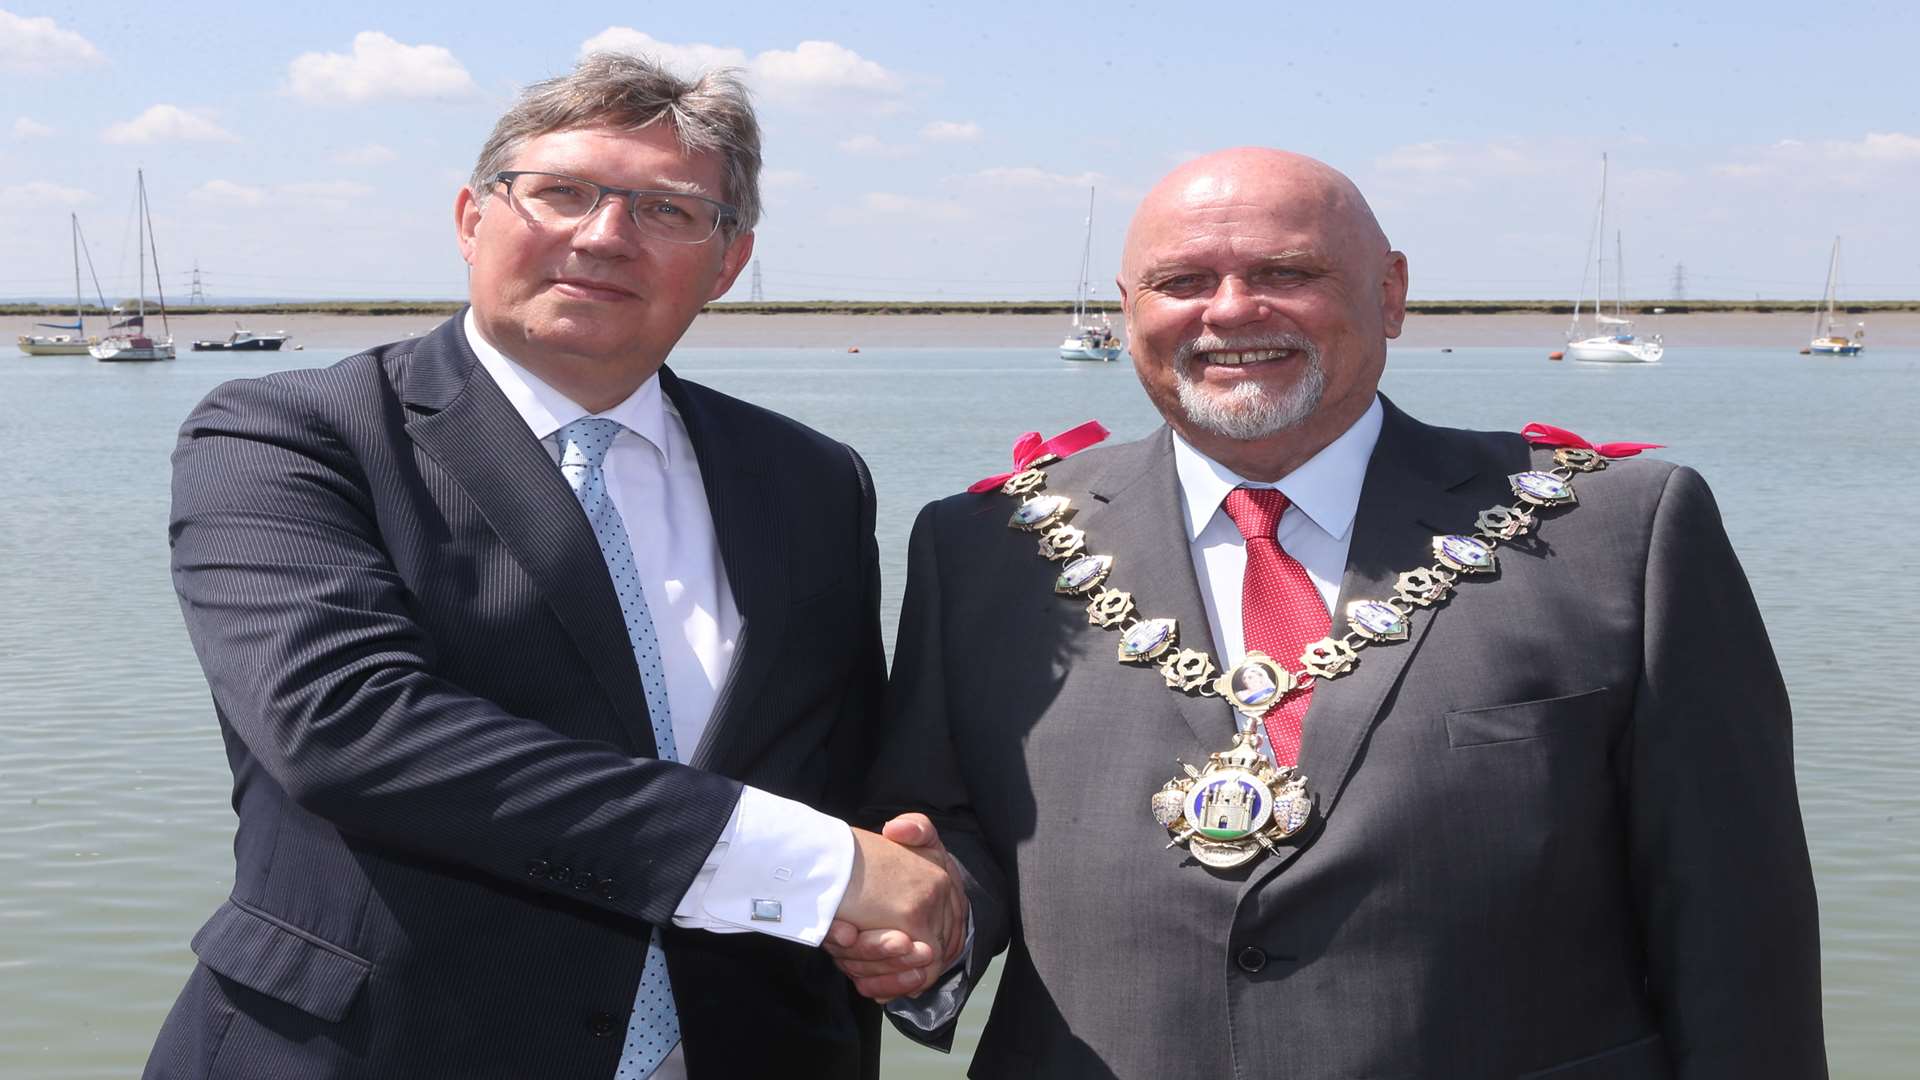 Dutch Mayor of Brielle Gregor Rensen, left, with The Mayor of Queenborough Cllr Mick Constable